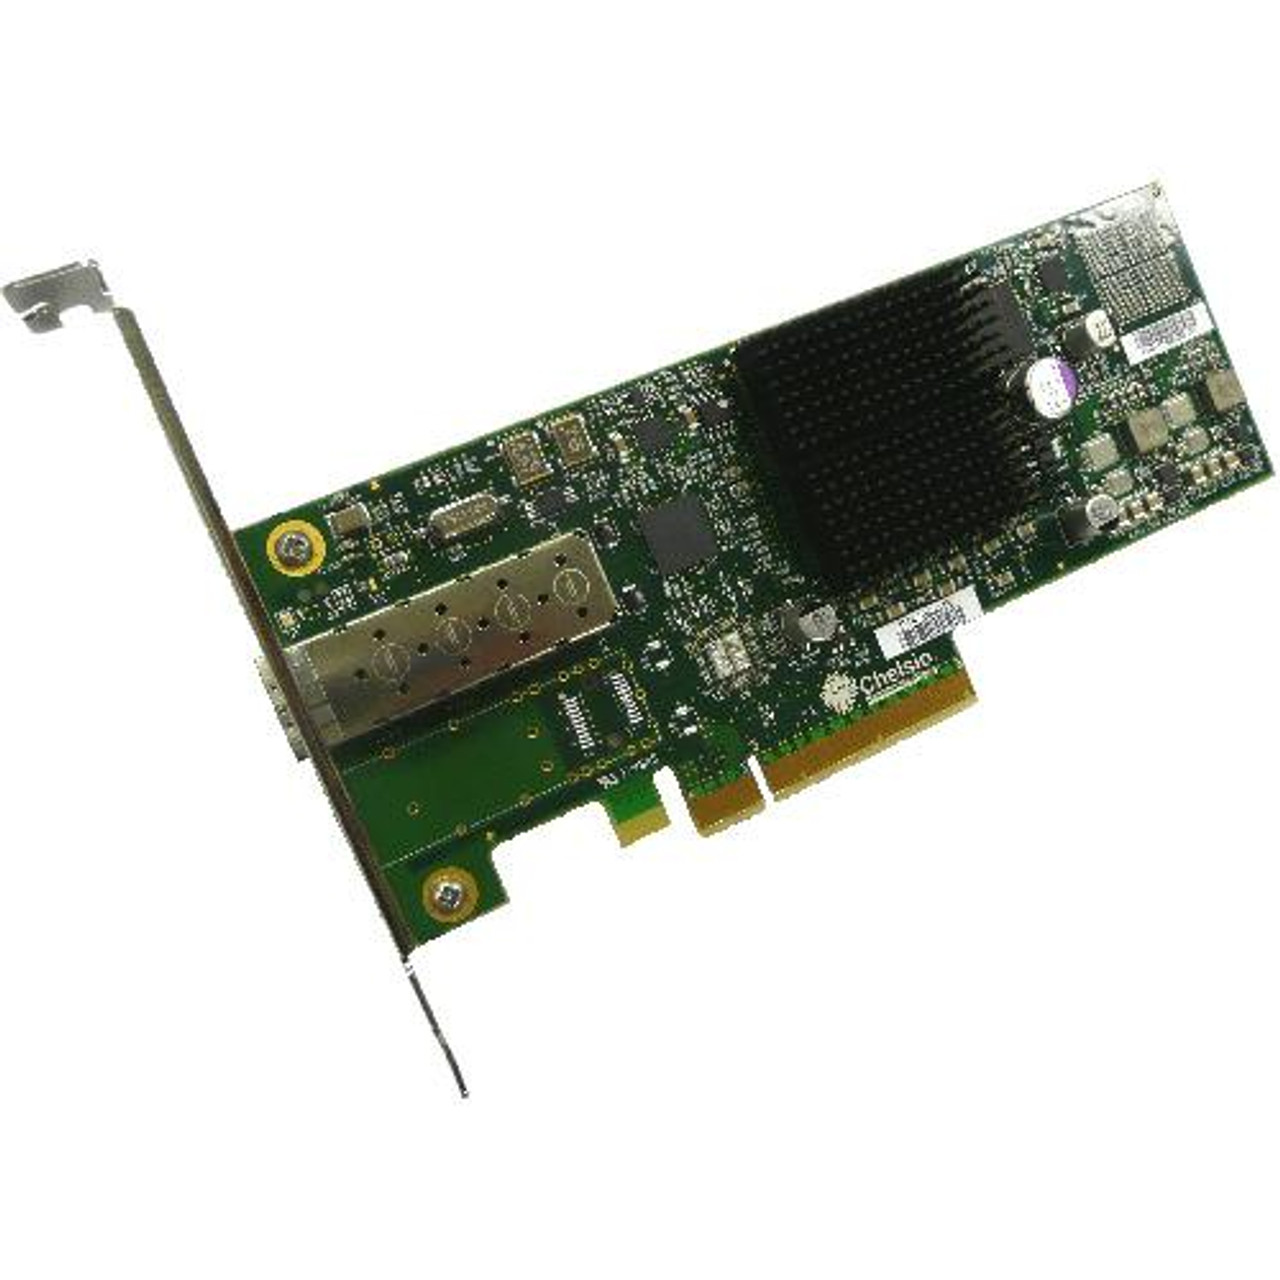 N310E Chelsio N310E Server Adapter PCI Express